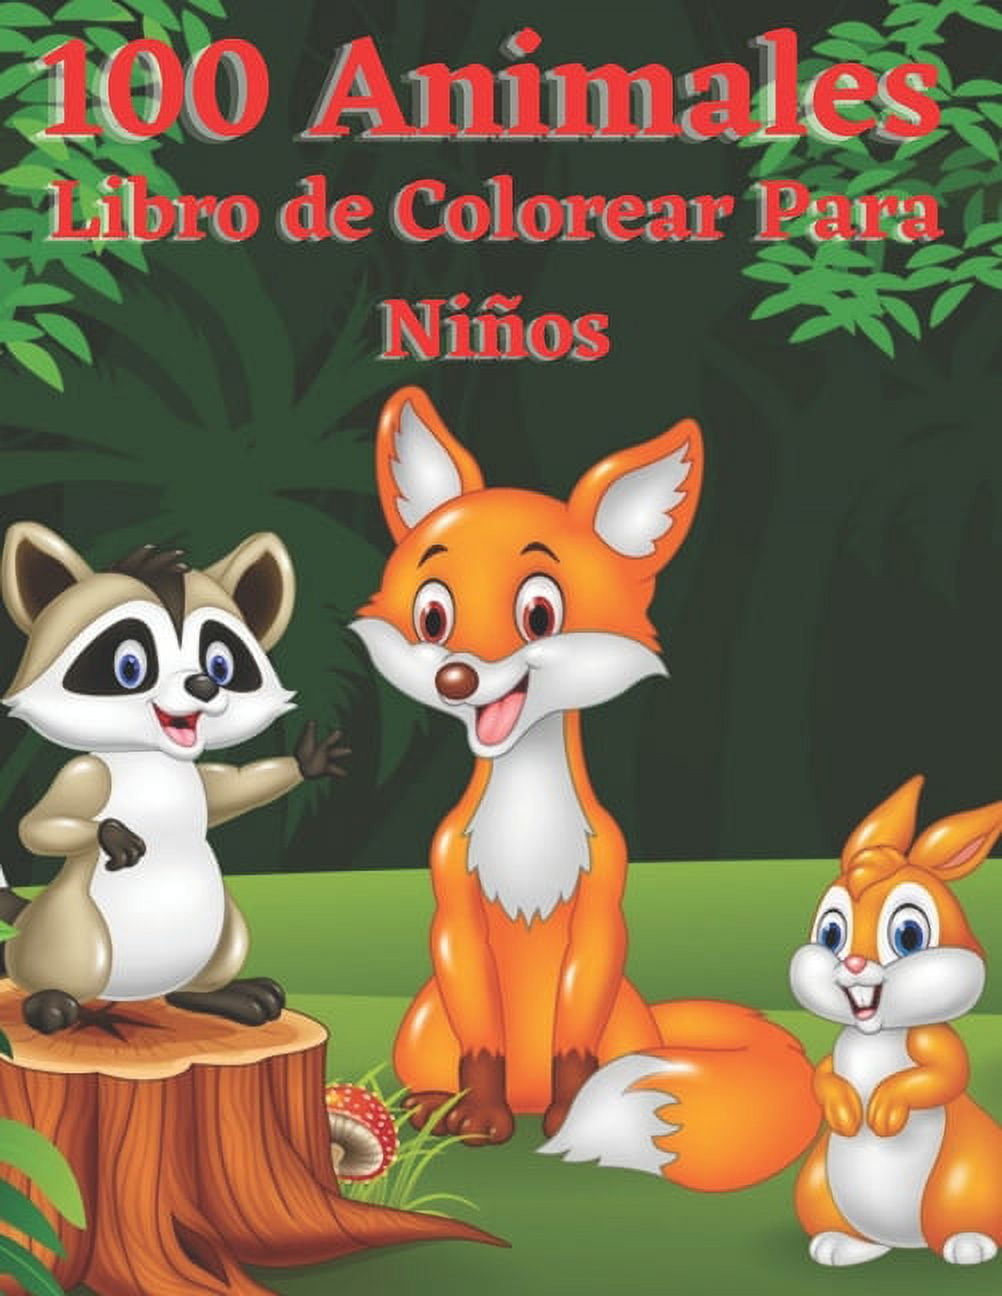 Libro de colorear para niños: Lindo animal, perro, gato, elefante